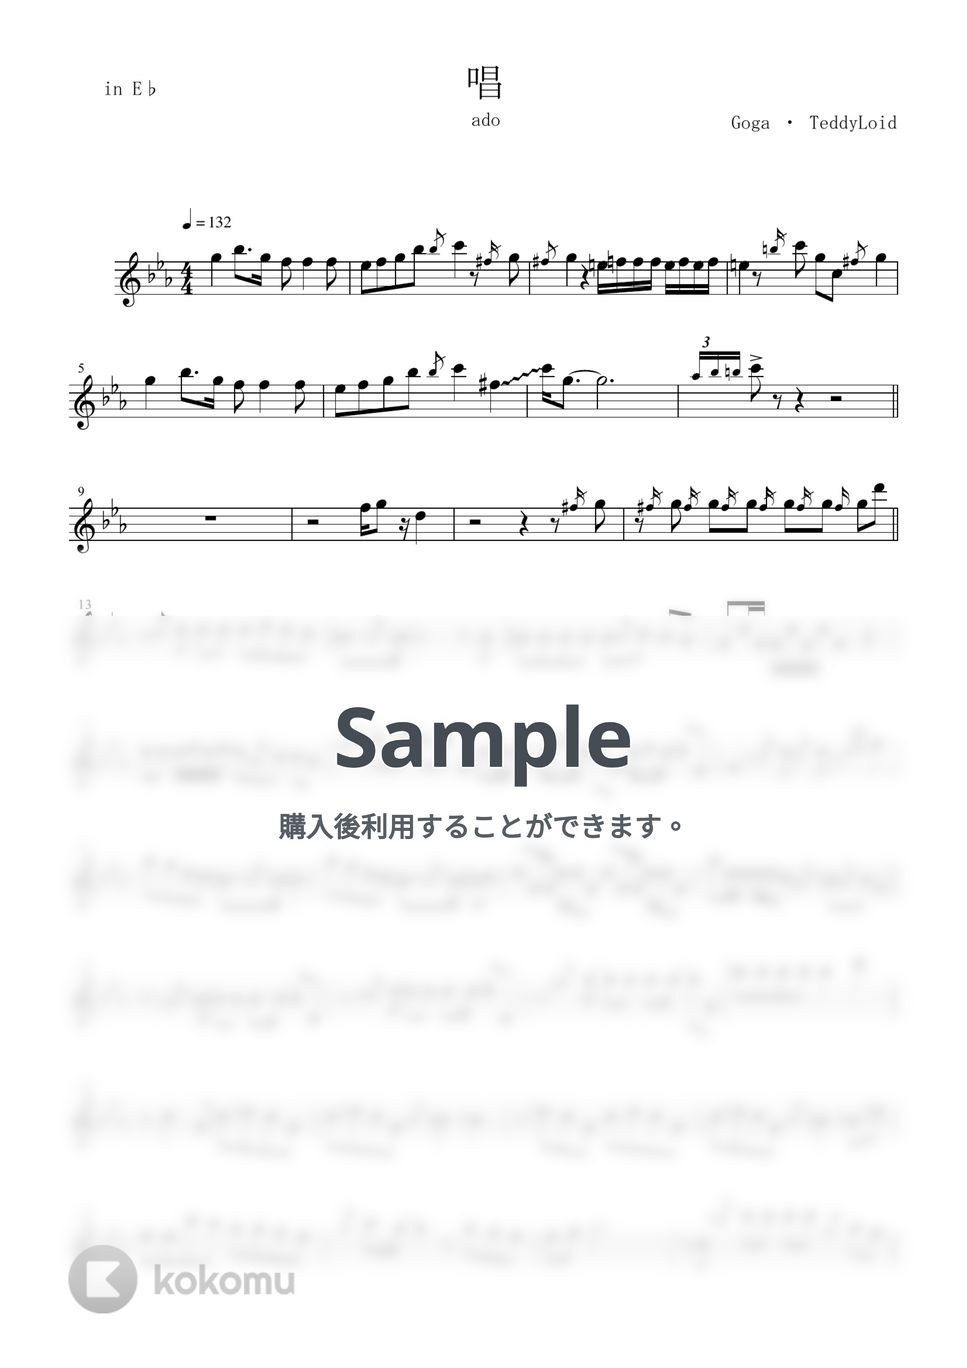 ado - 唱 (in E♭/ソロ/アルトサックス/唱/ado/ゾンビデダンス/ユニバ/USJ) by enorisa